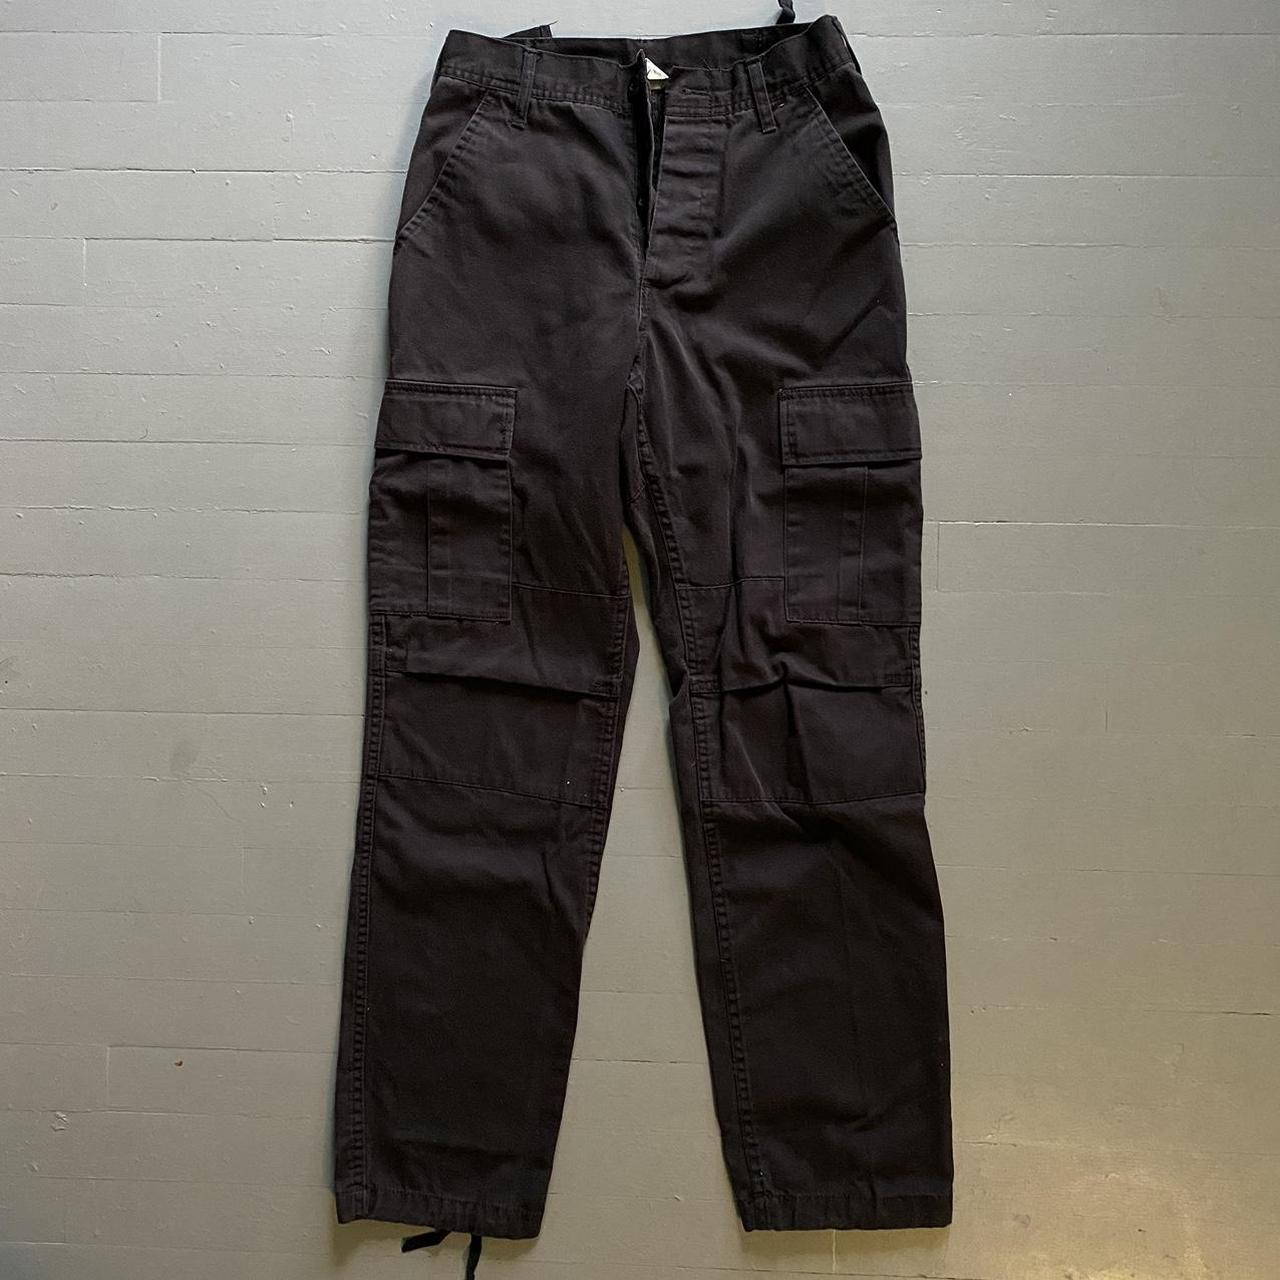 y2k black cargo pants military style great... - Depop